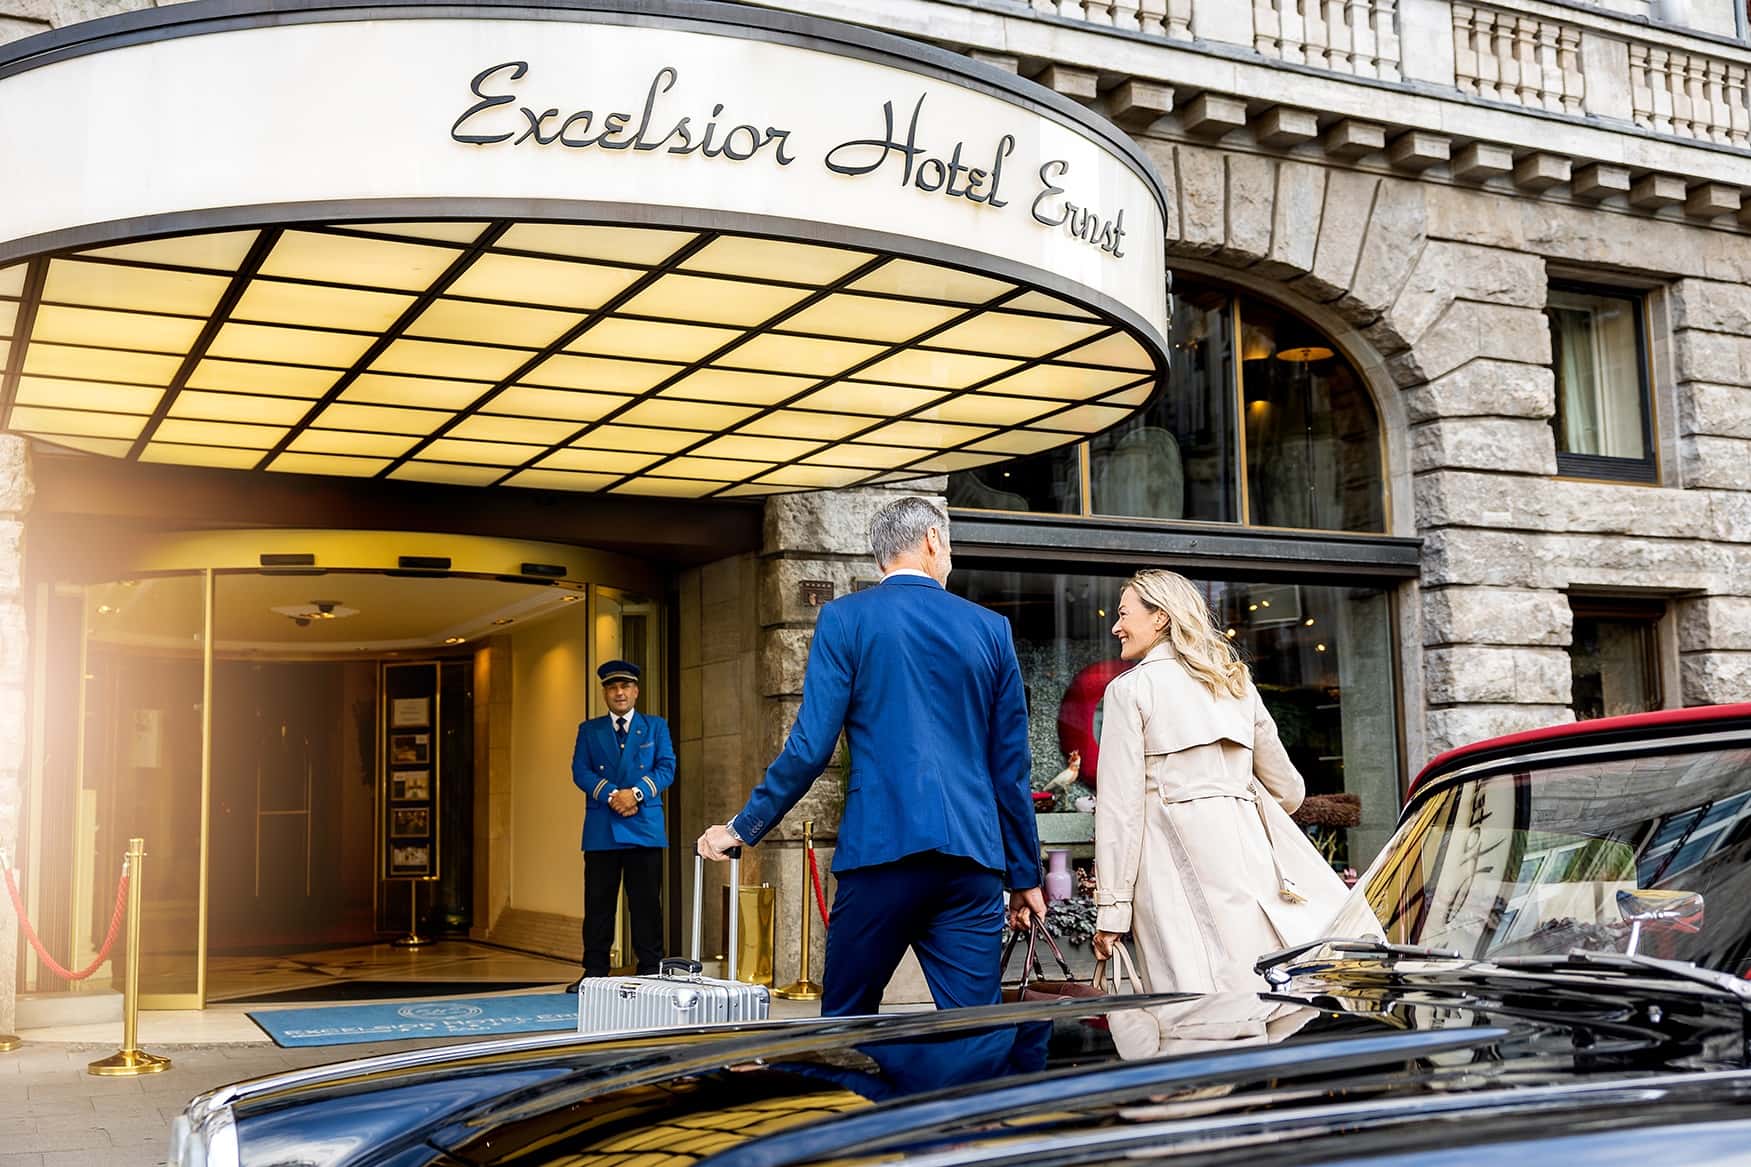 Entrance luxury Hotel Excelsior Hotel Ernst